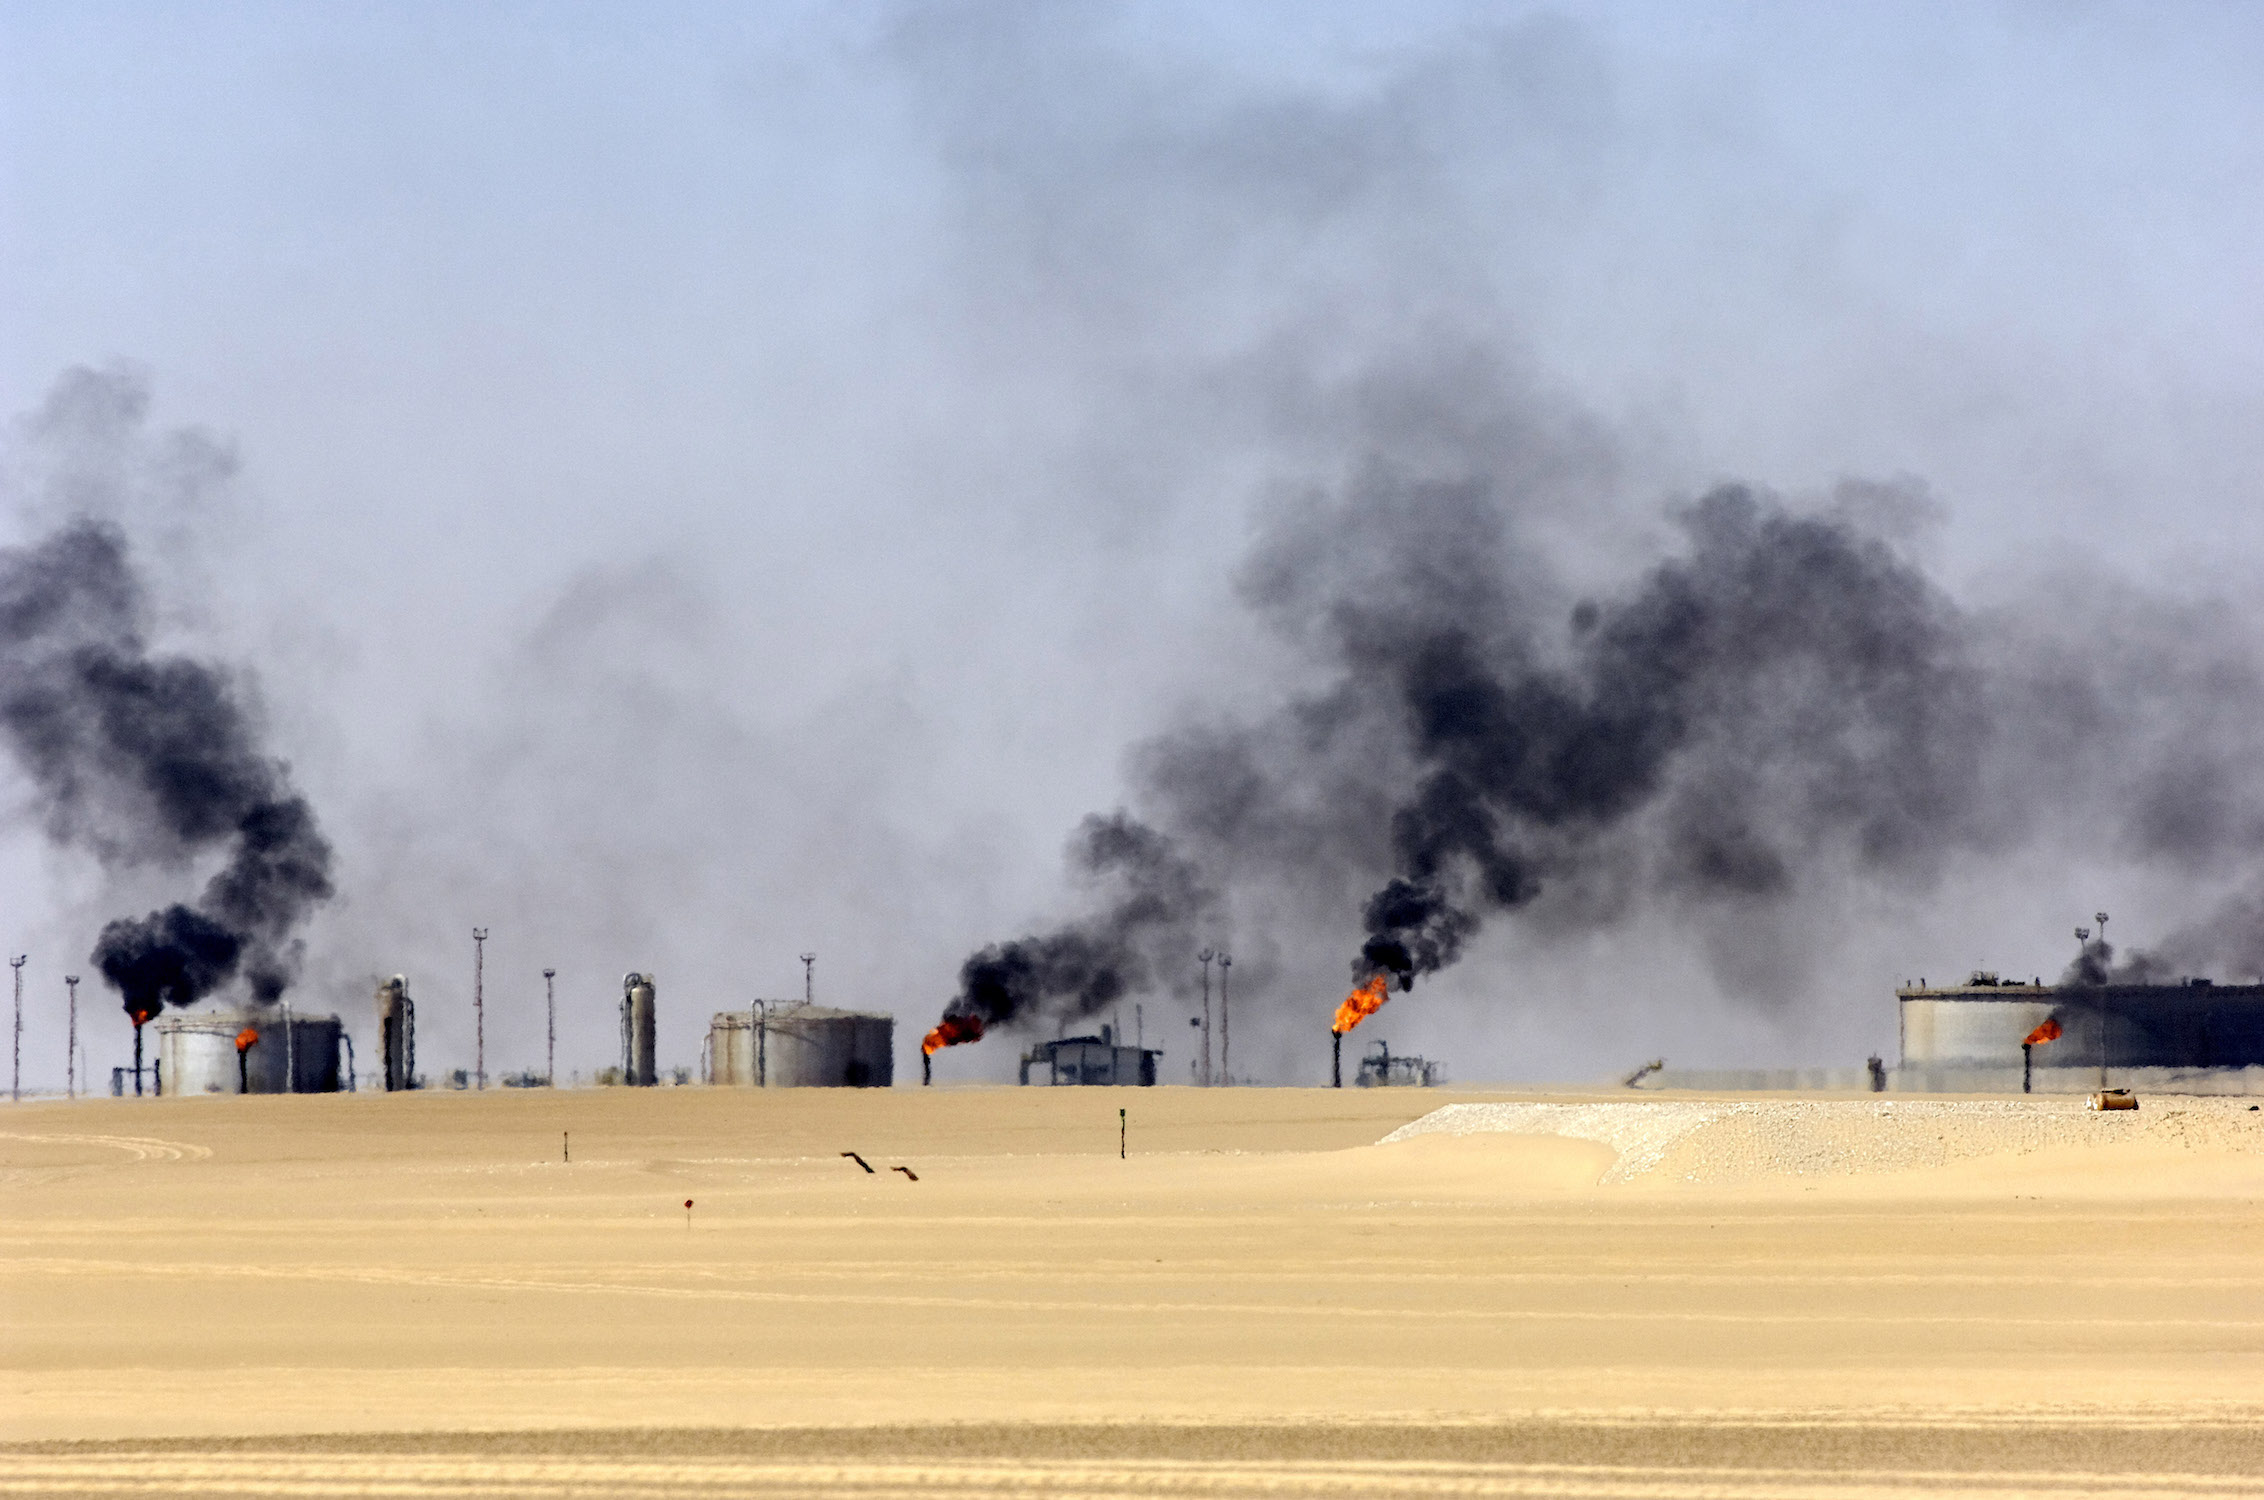 Нефтяные скважины в районе Джалу в Ливийской пустыне. Март 2019 г. (Фото: Phillipe Roy/Aurimages)